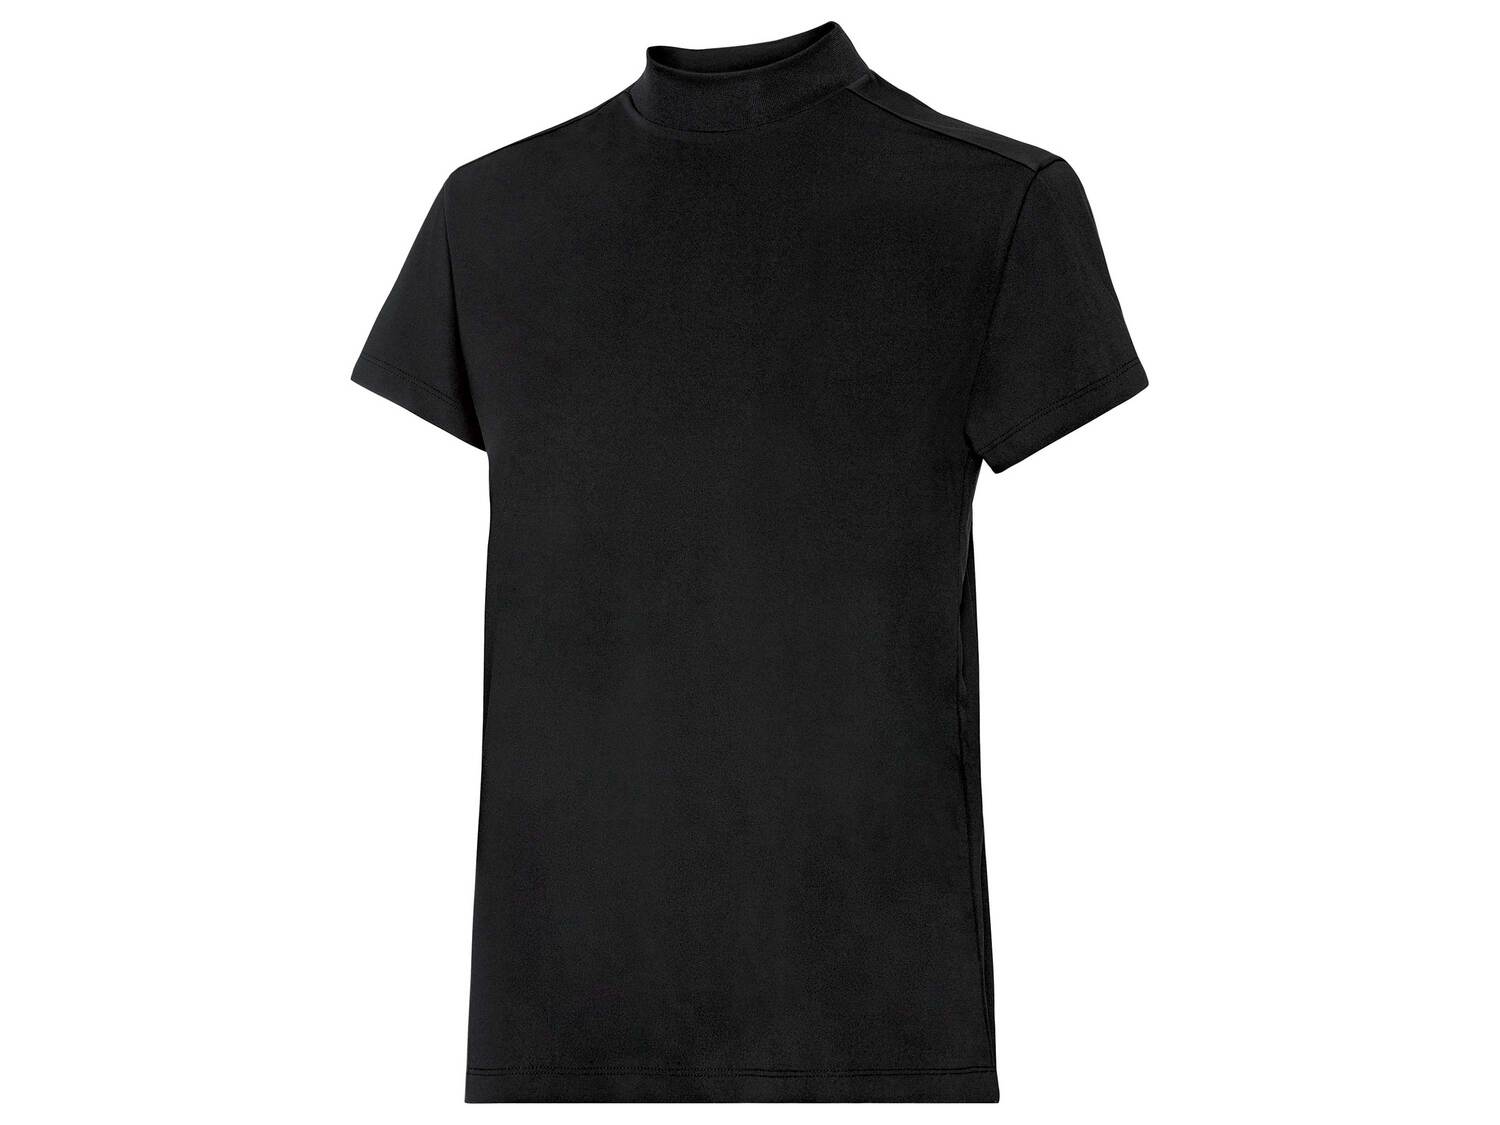 T-shirt technique femme ou homme Crivit, le prix 3.99 € 
- Au choix :
- Femme ...